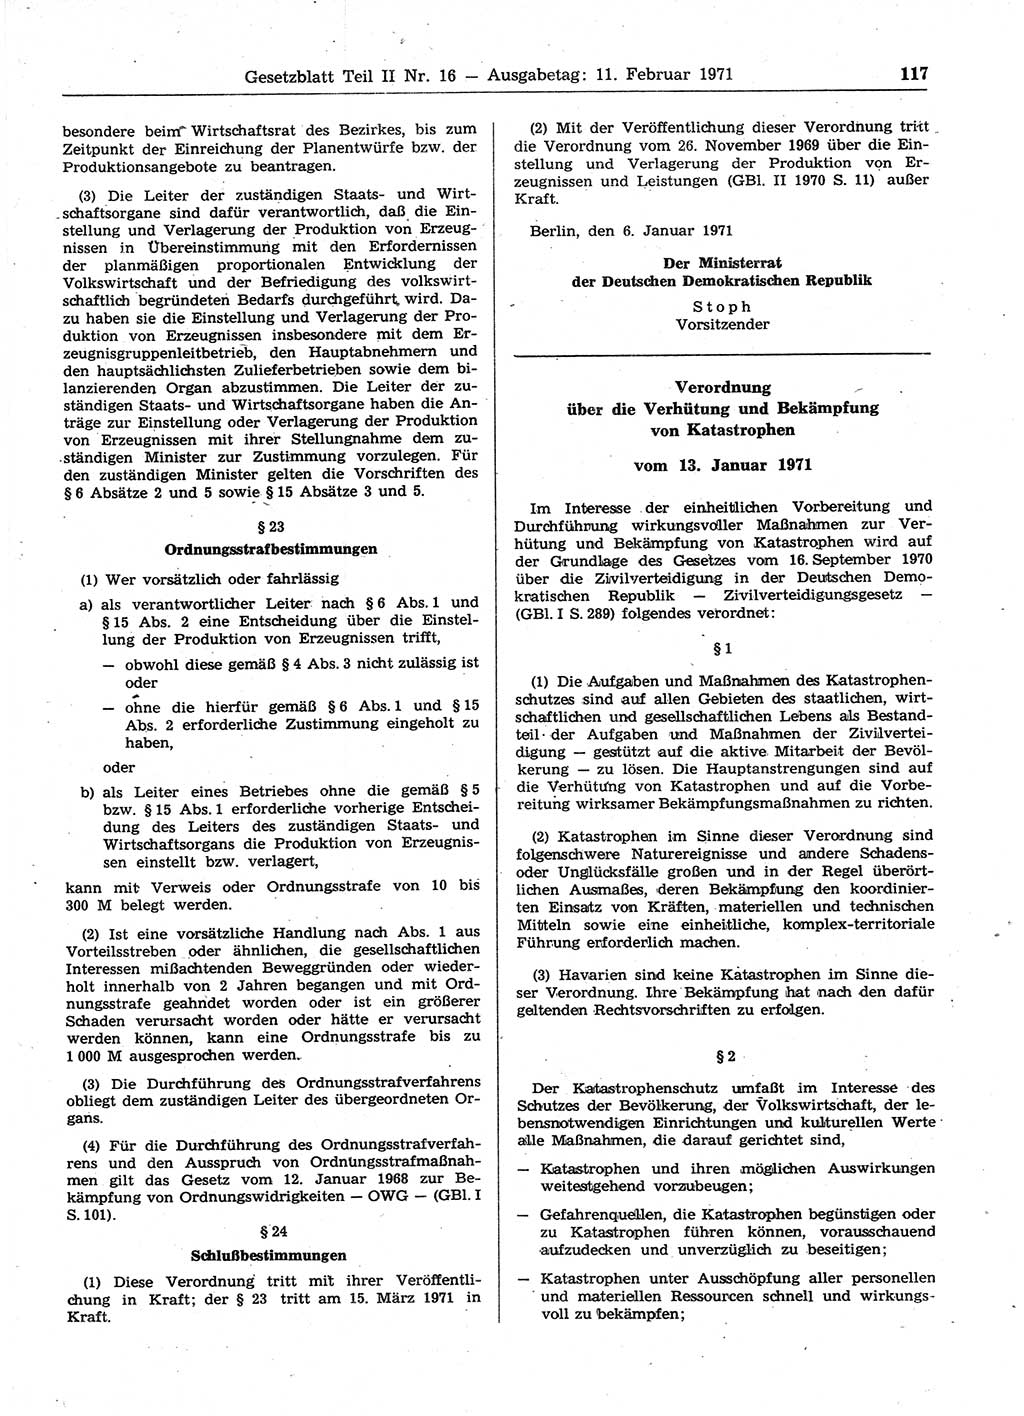 Gesetzblatt (GBl.) der Deutschen Demokratischen Republik (DDR) Teil ⅠⅠ 1971, Seite 117 (GBl. DDR ⅠⅠ 1971, S. 117)